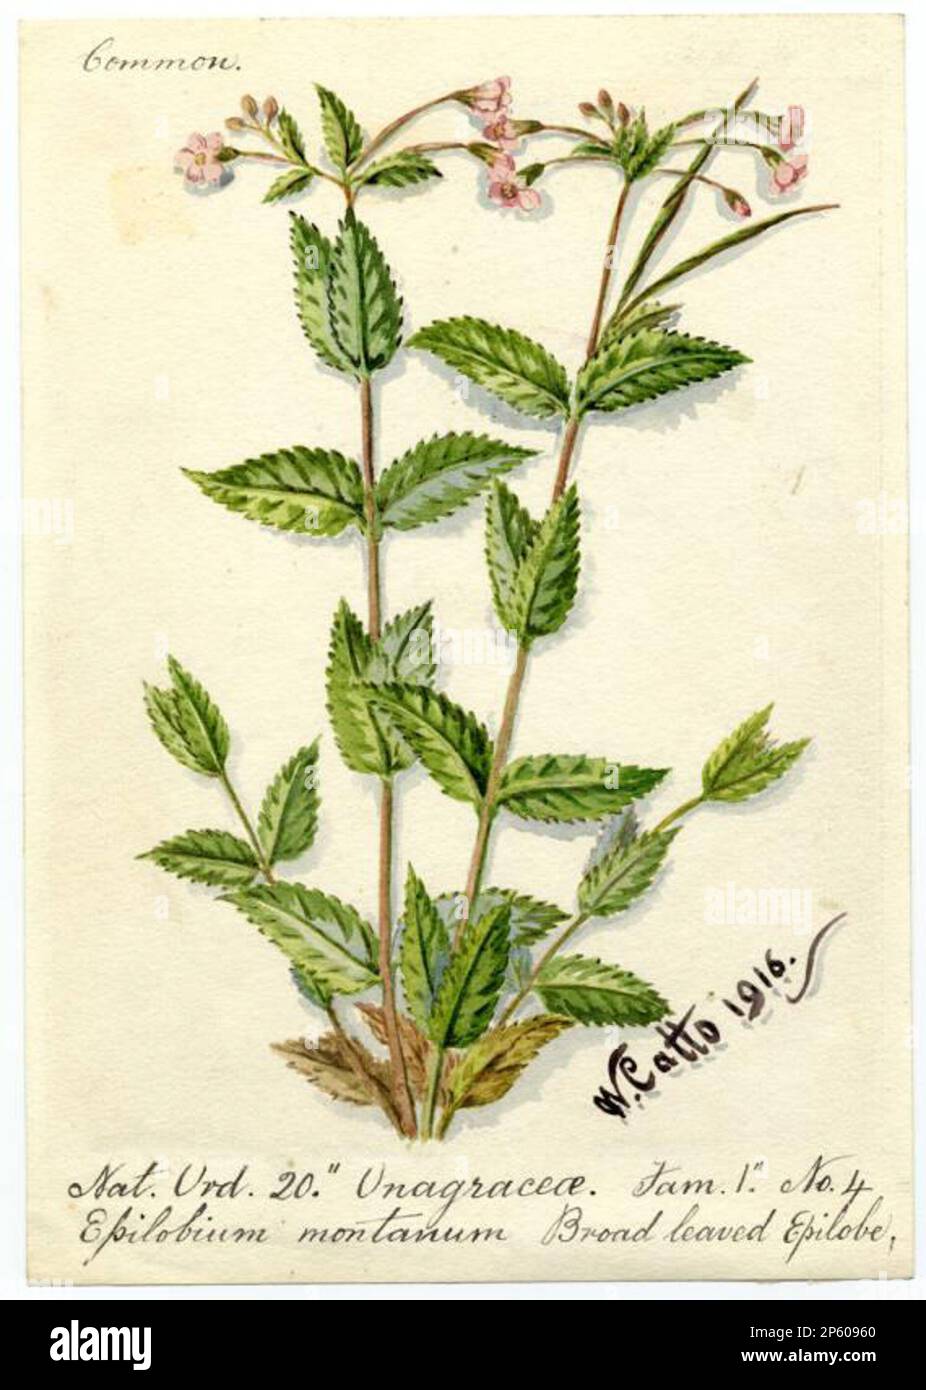 Broad leaved Epilobe (Epilobium montanum), William Catto (Aberdeen, Scotland, 1843 - 1927) 1916 Stock Photo